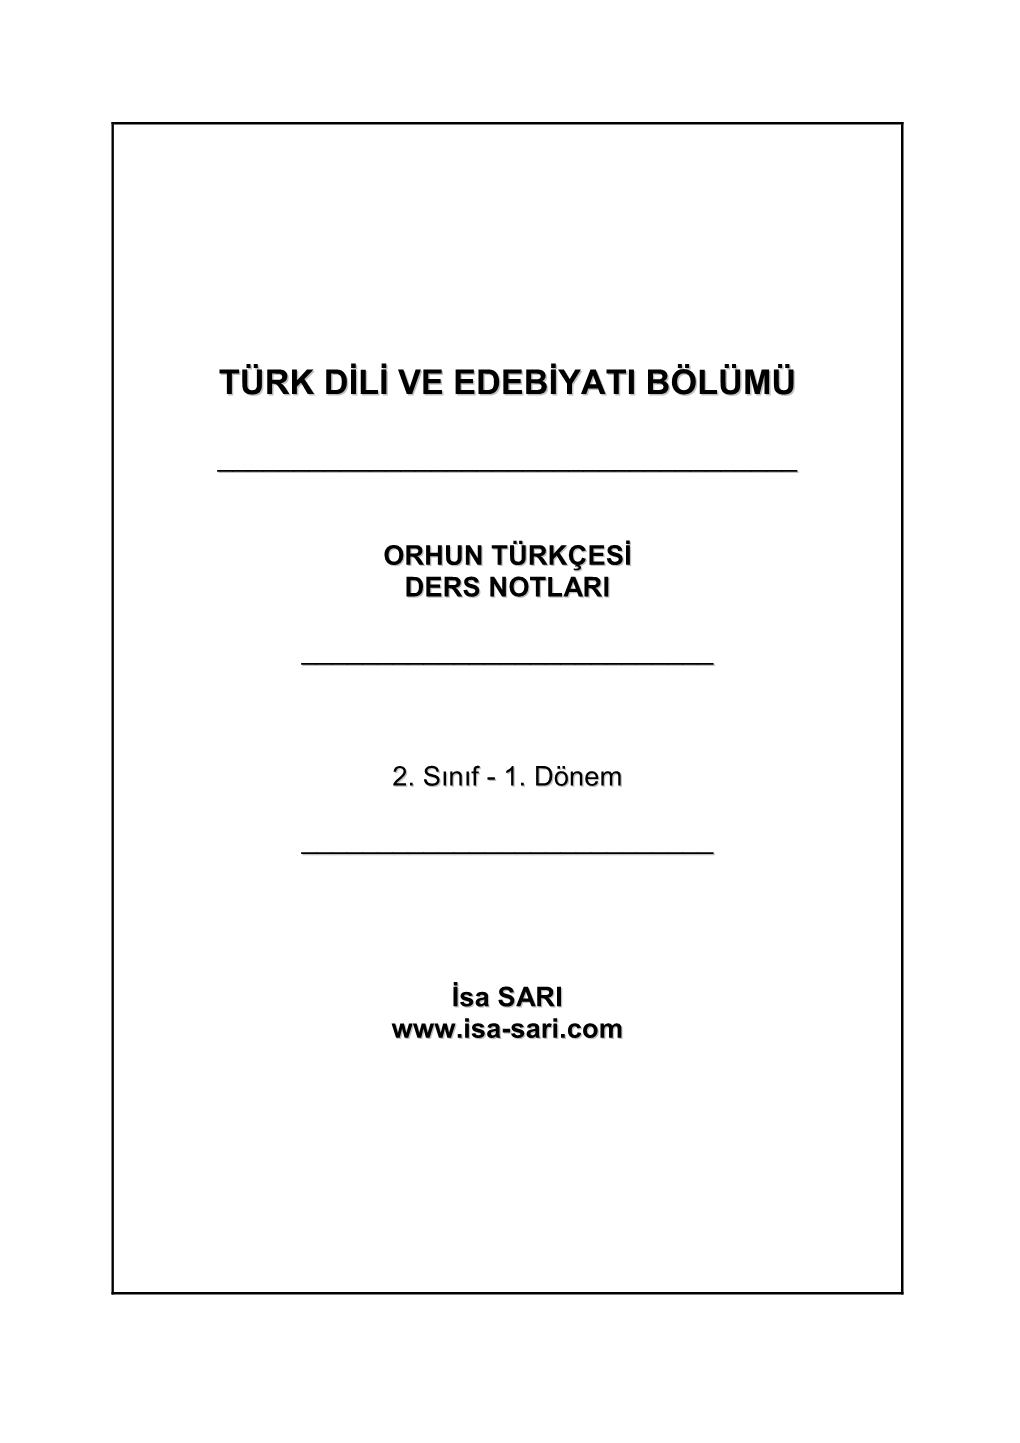 Orhun Türkçesi Ders Notlari